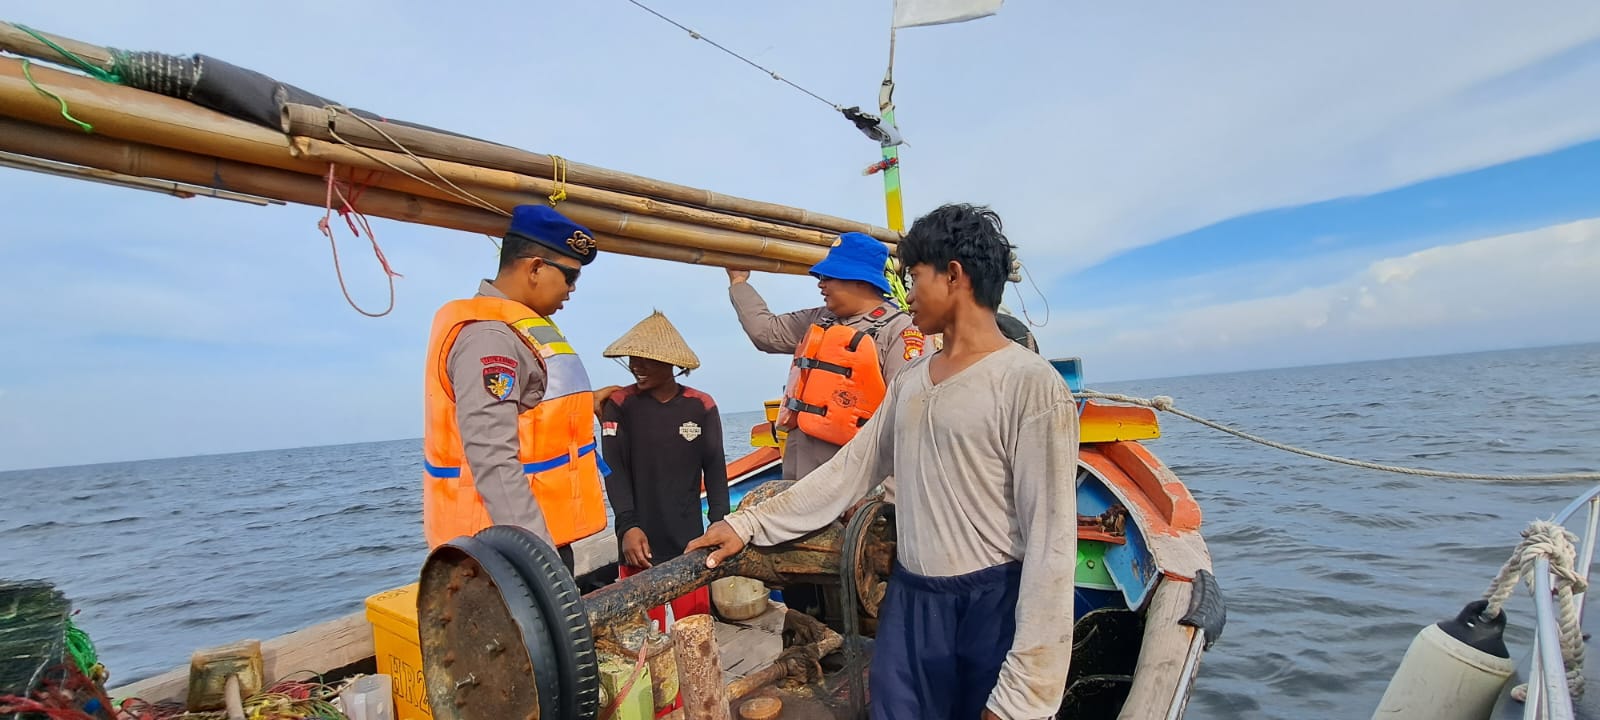 Team Patroli Satpolair Polres Kepulauan Seribu Berikan Himbauan Keselamatan kepada Nelayan di Perairan Pulau Untung Jawa